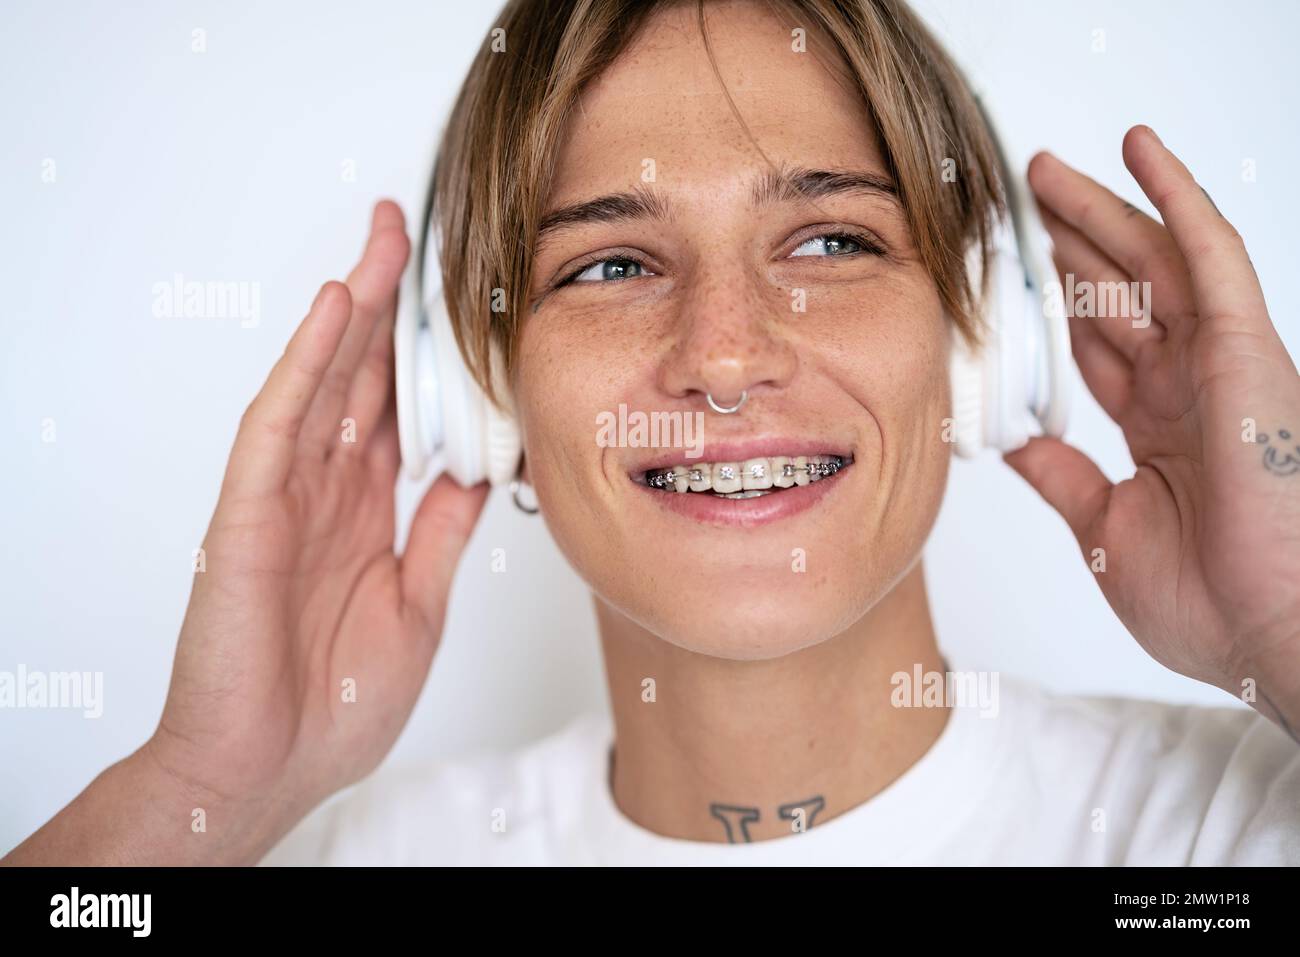 Blonde Frau mit Kopfhörern, Gesichts-Piercing und Zahnspange lächelnd Nahaufnahme. Stockfoto